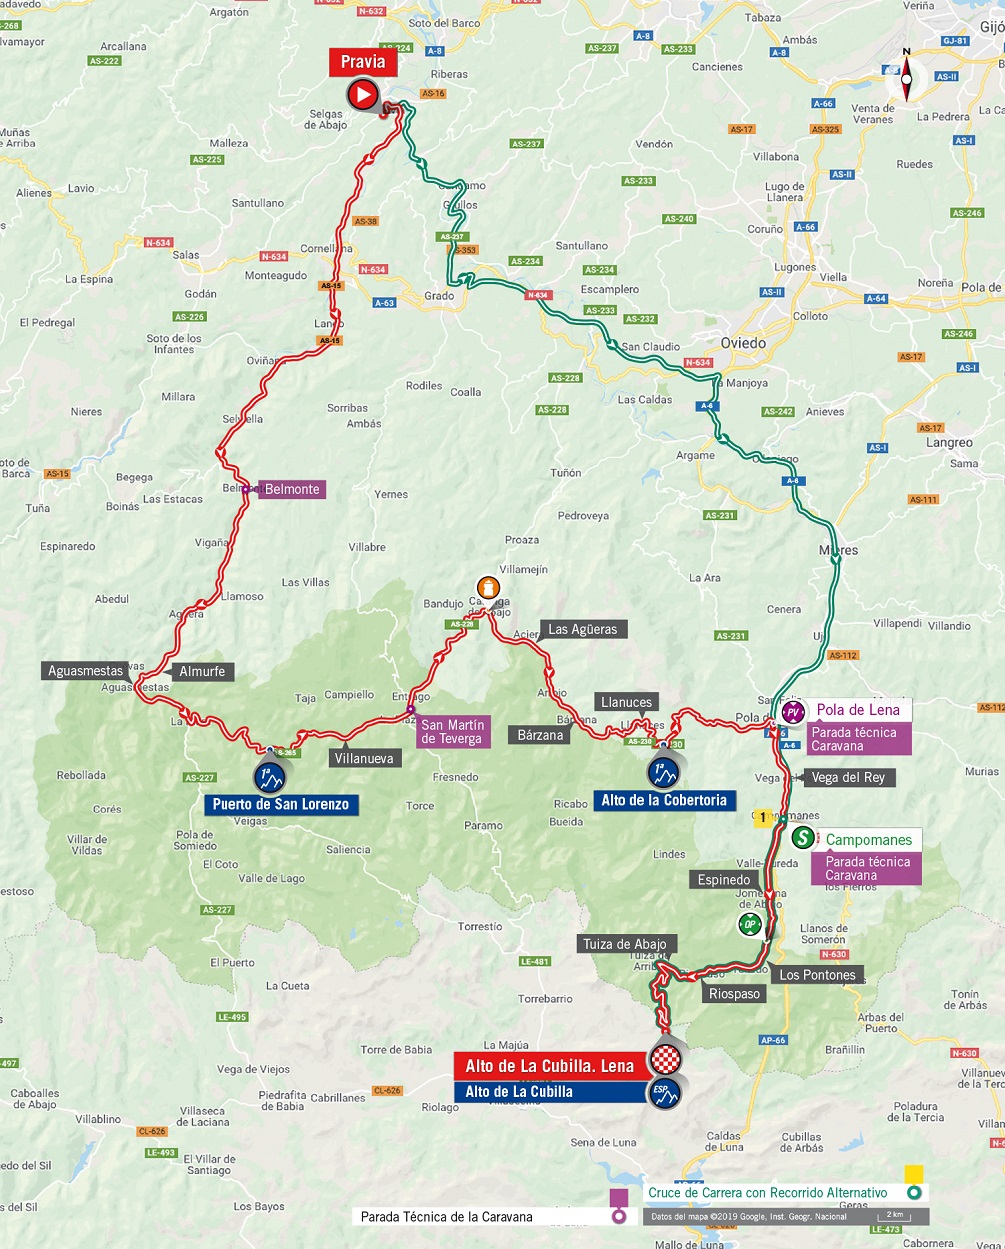 Streckenverlauf Vuelta a Espaa 2019 - Etappe 16